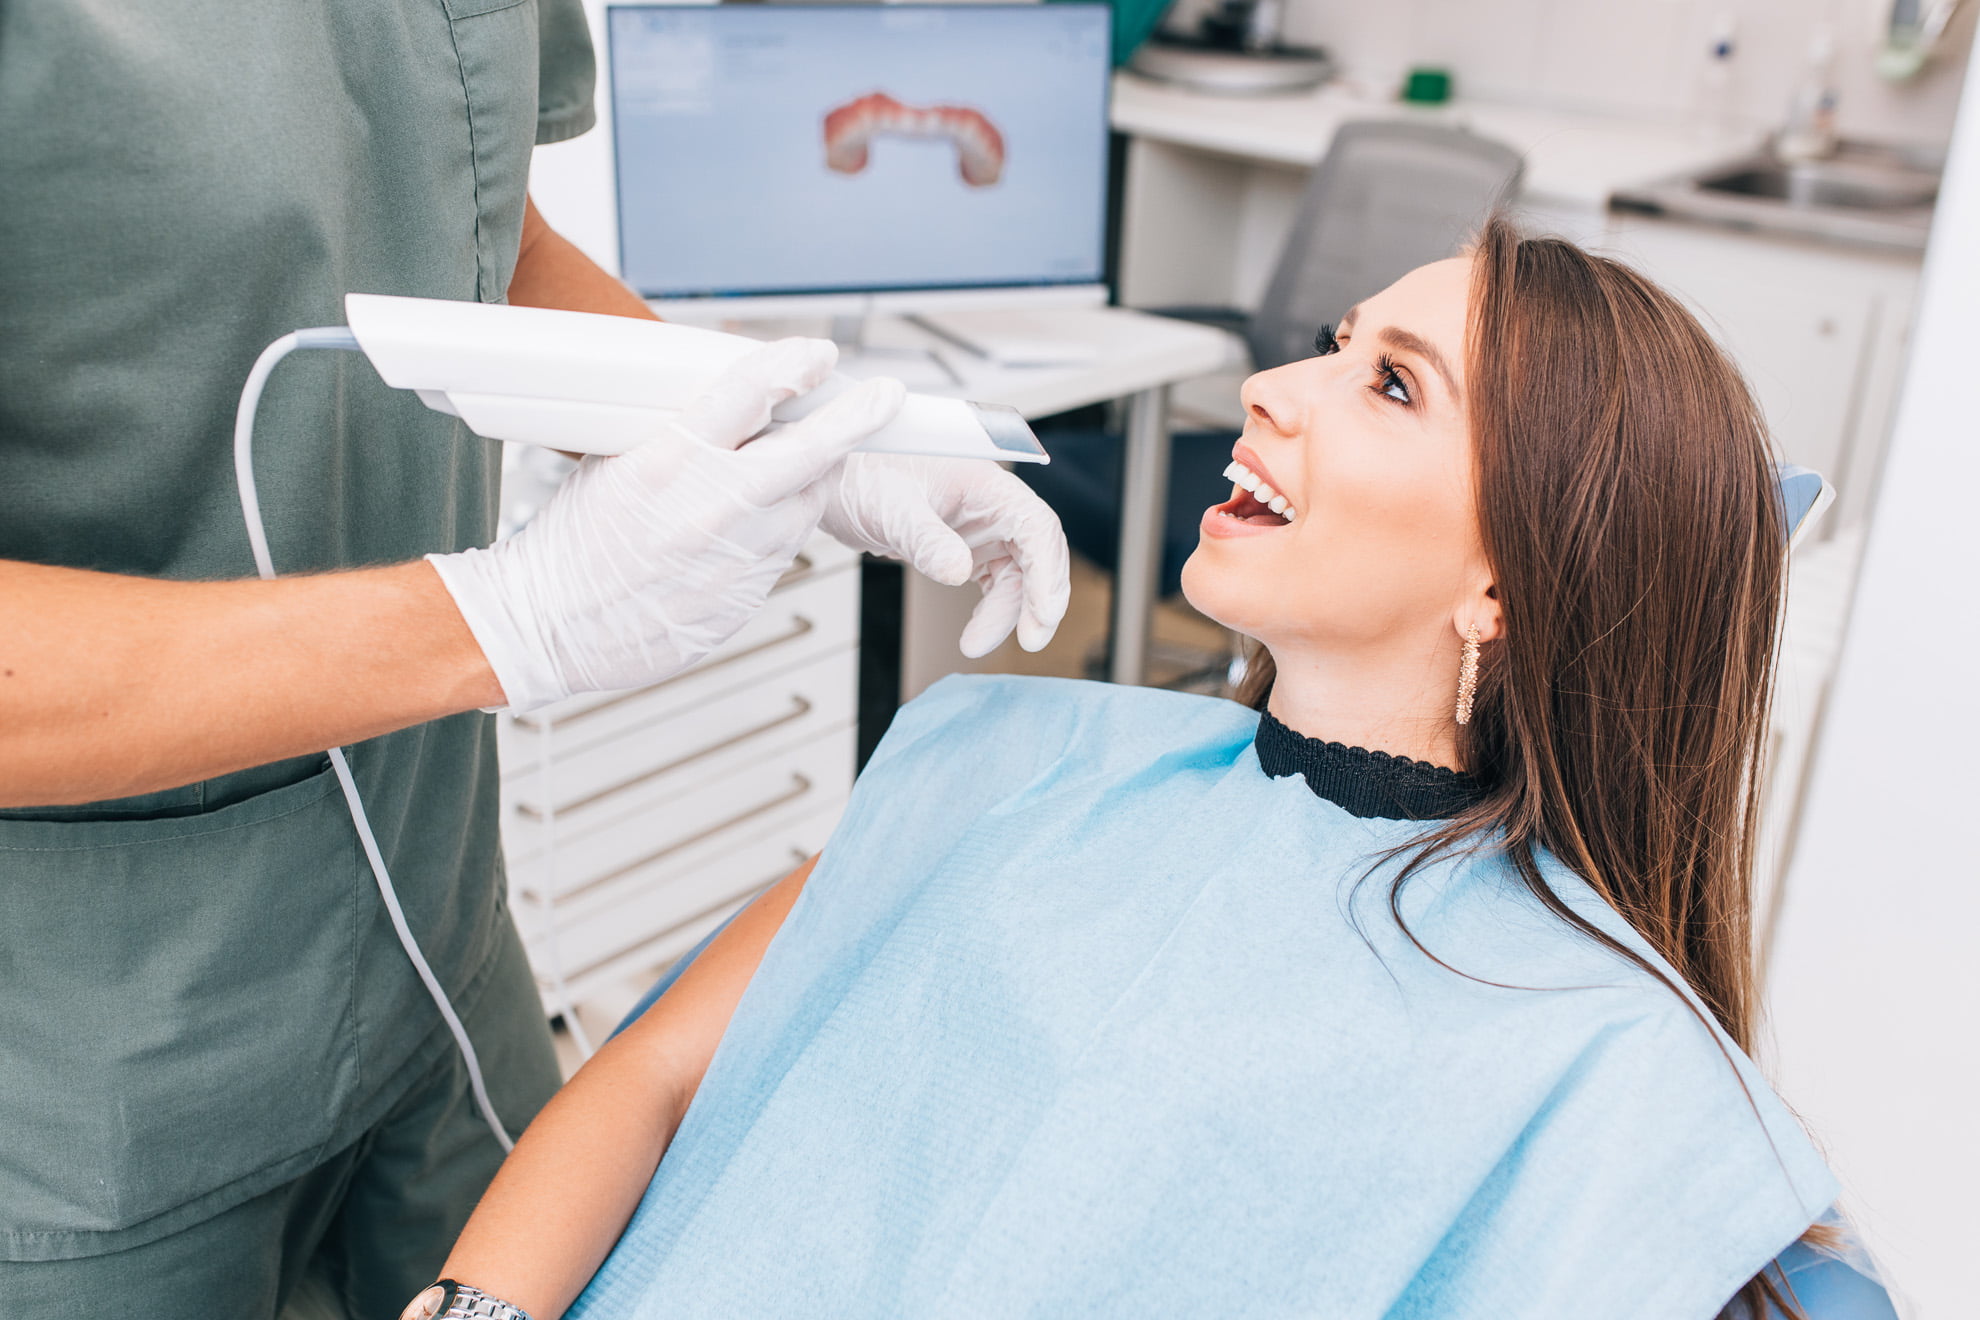 Аметист стоматология. Будущее стоматологии. Стоматология будущего. Digital Dentistry. Сканирование зубов какое облучение.